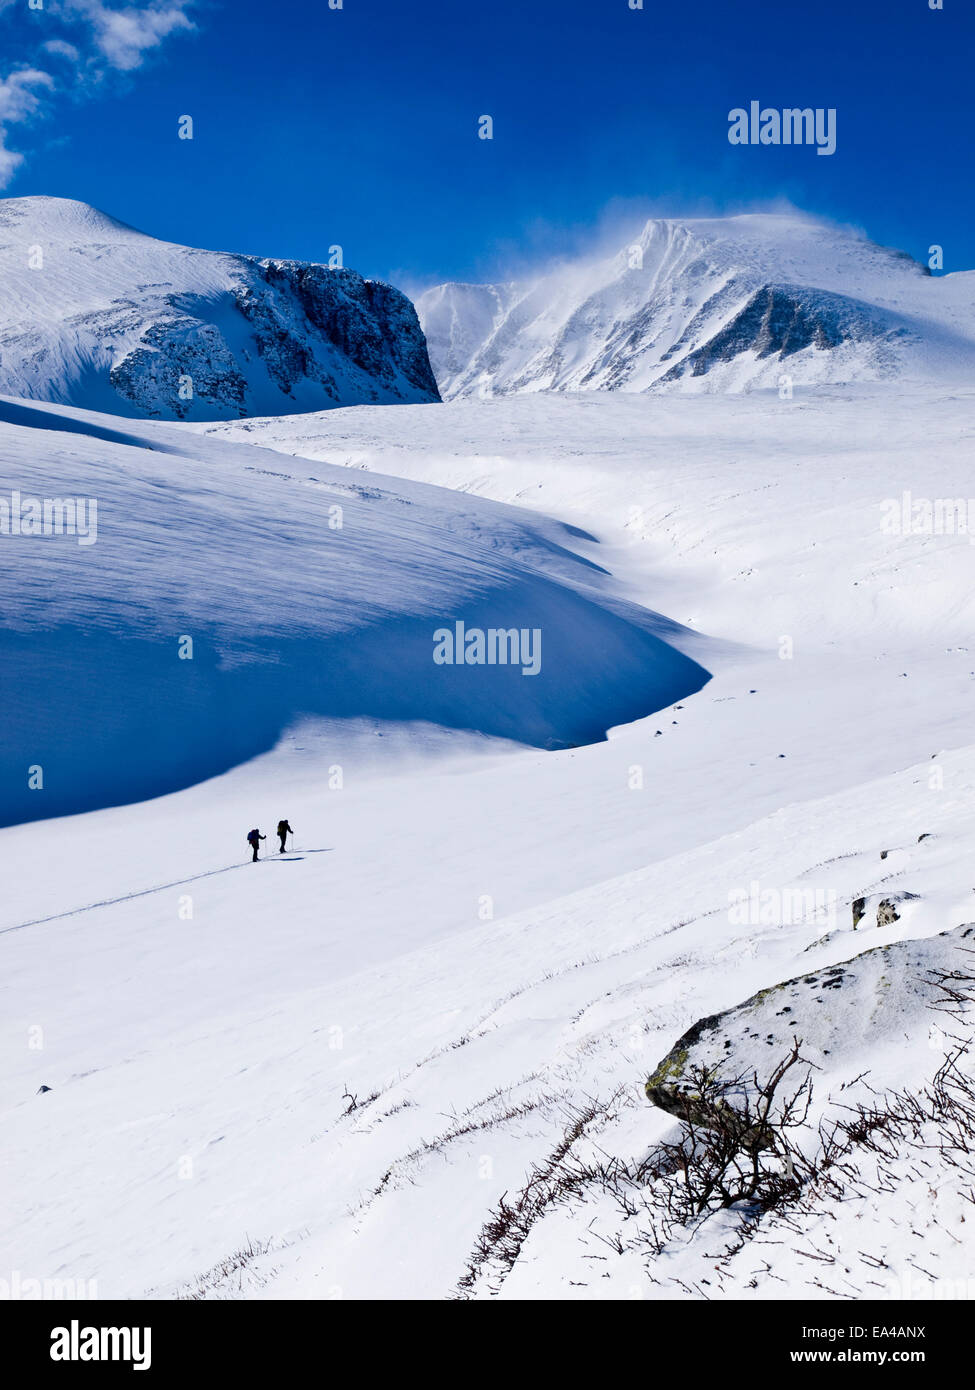 Großen Schnee bedeckte Berge und blauer Himmel mit zwei Ski-Tourer in Rondane Berge, Norwegen Stockfoto